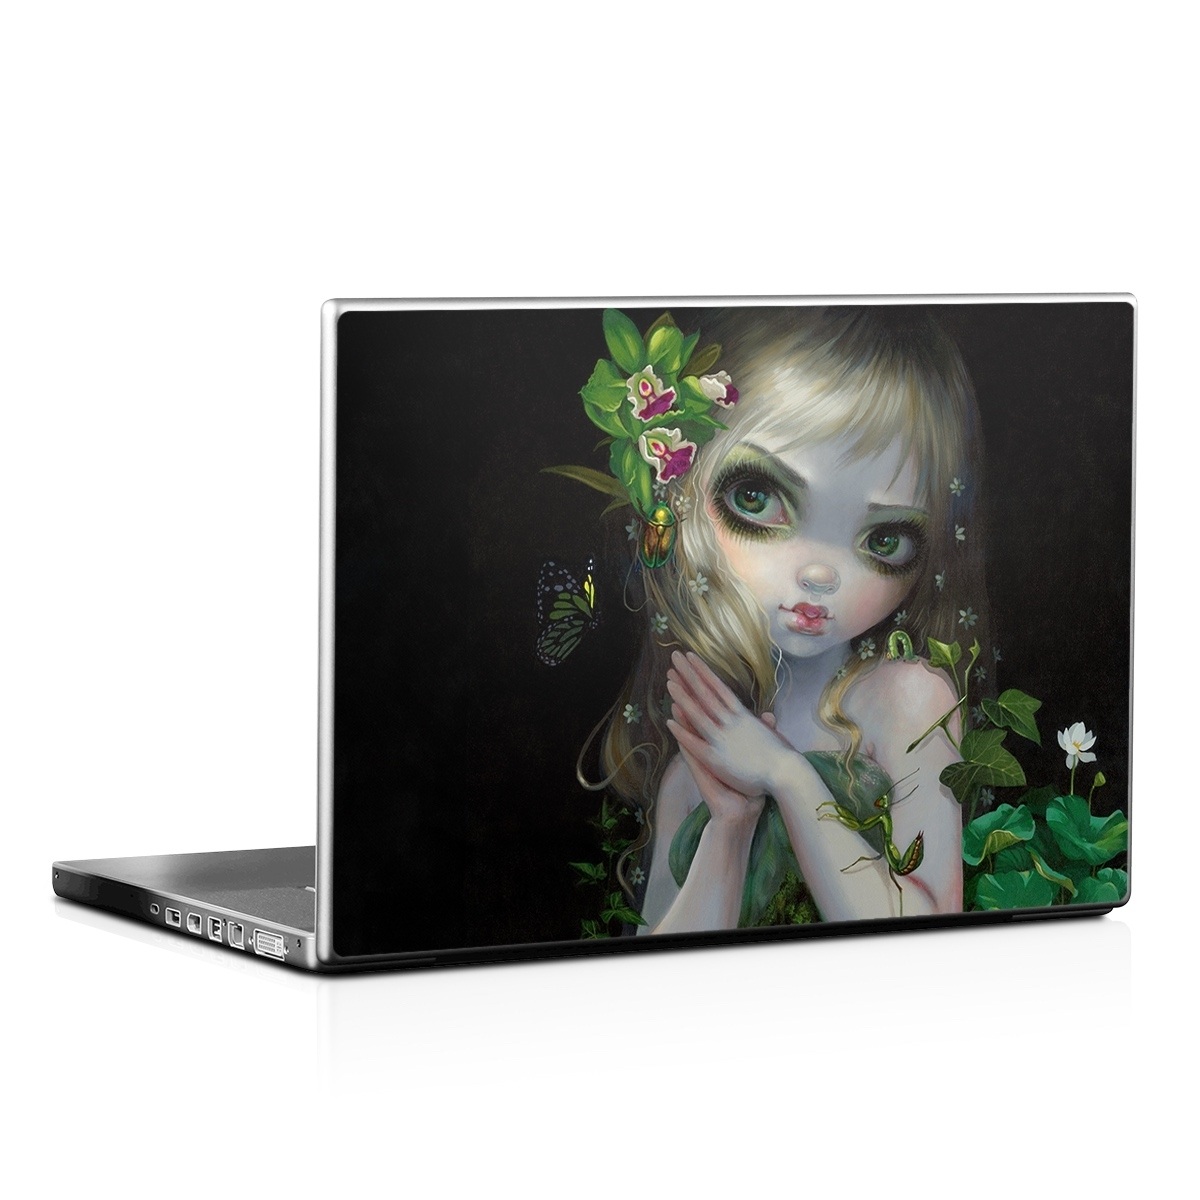 Laptop Skin - Green Goddess (Image 1)